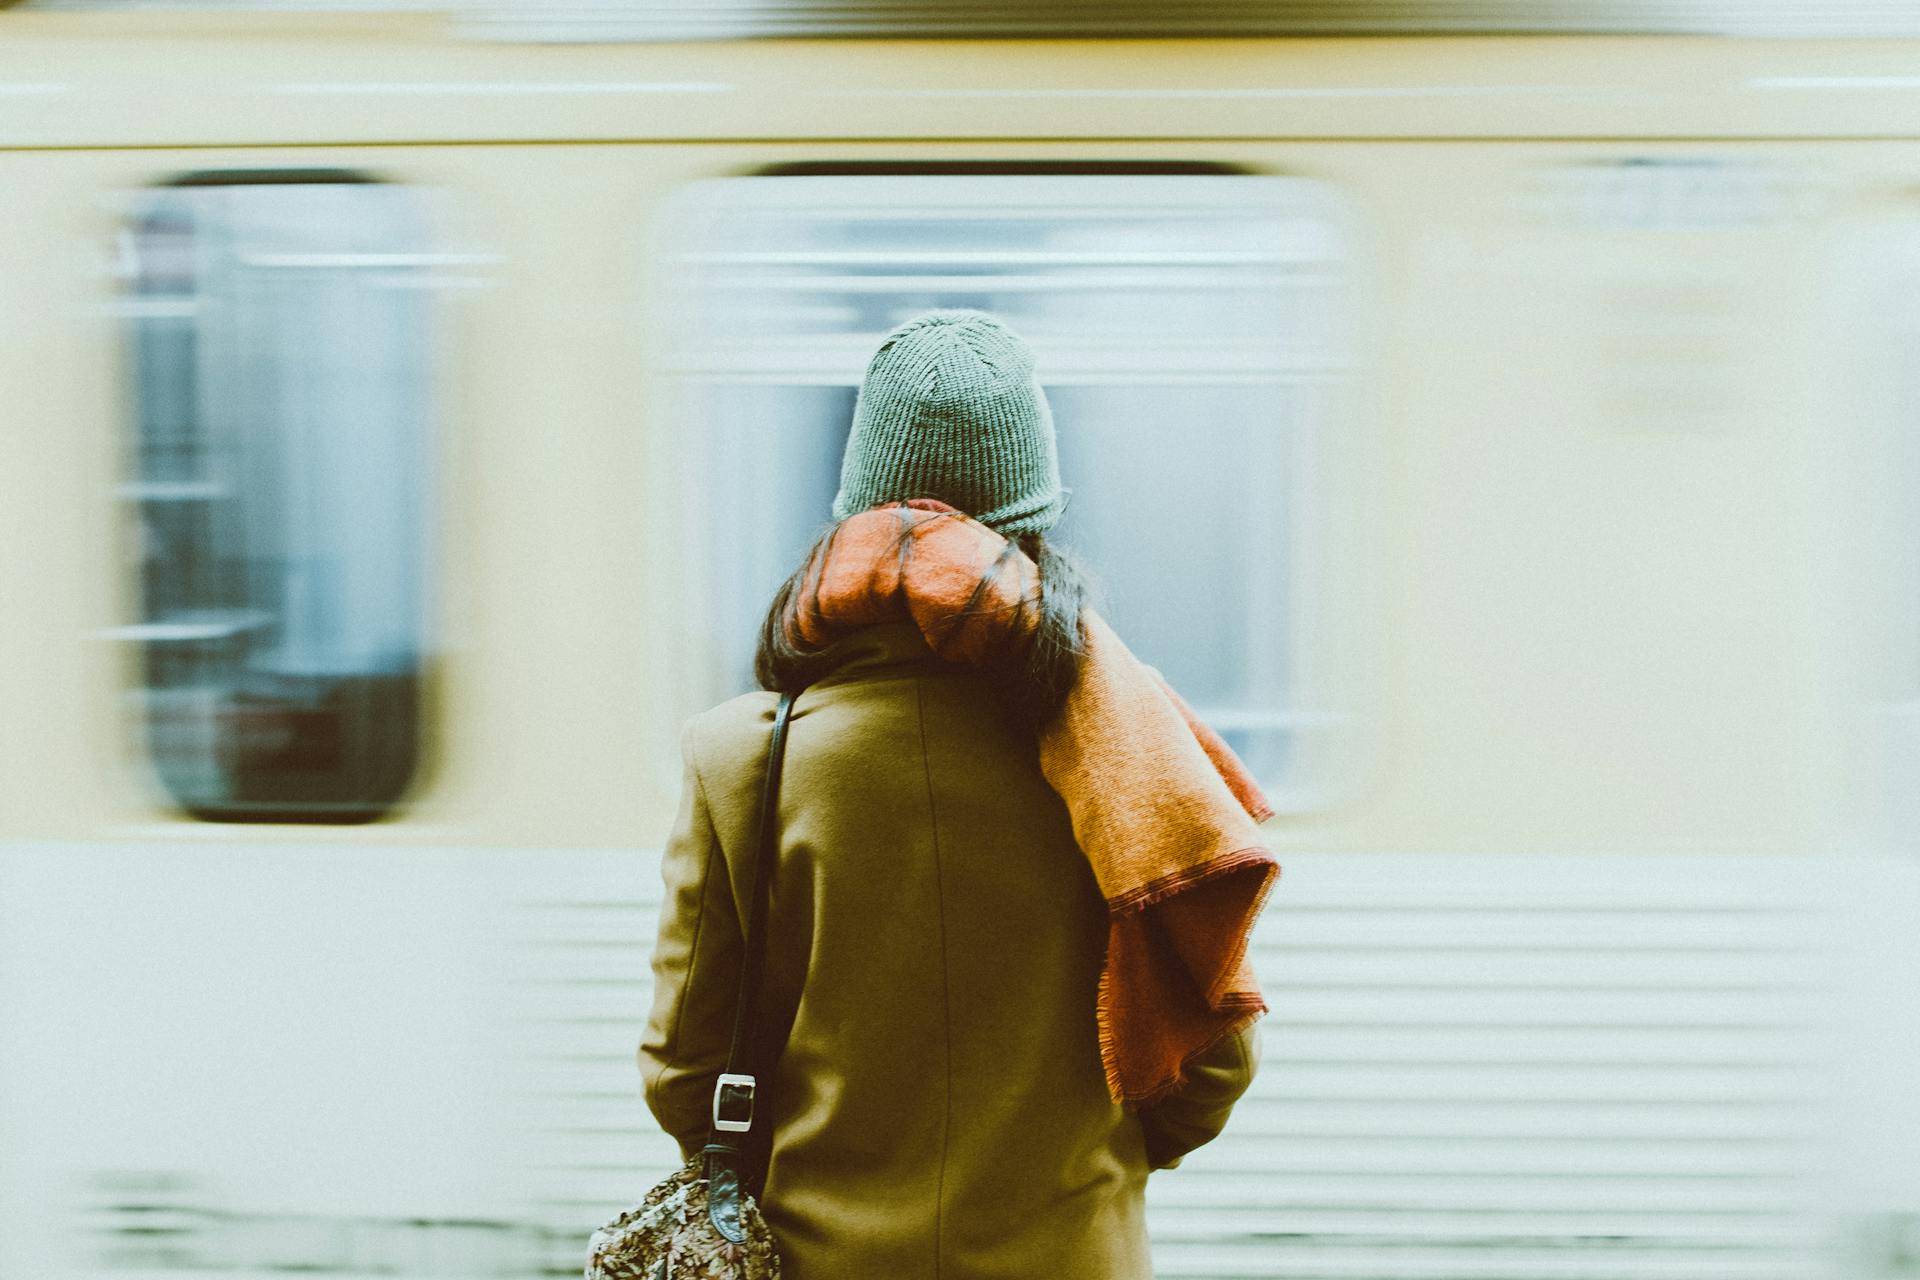 Ein Zeitrafferfoto von einer Person, die in der Nähe eines Zuges steht | Quelle: Pexels